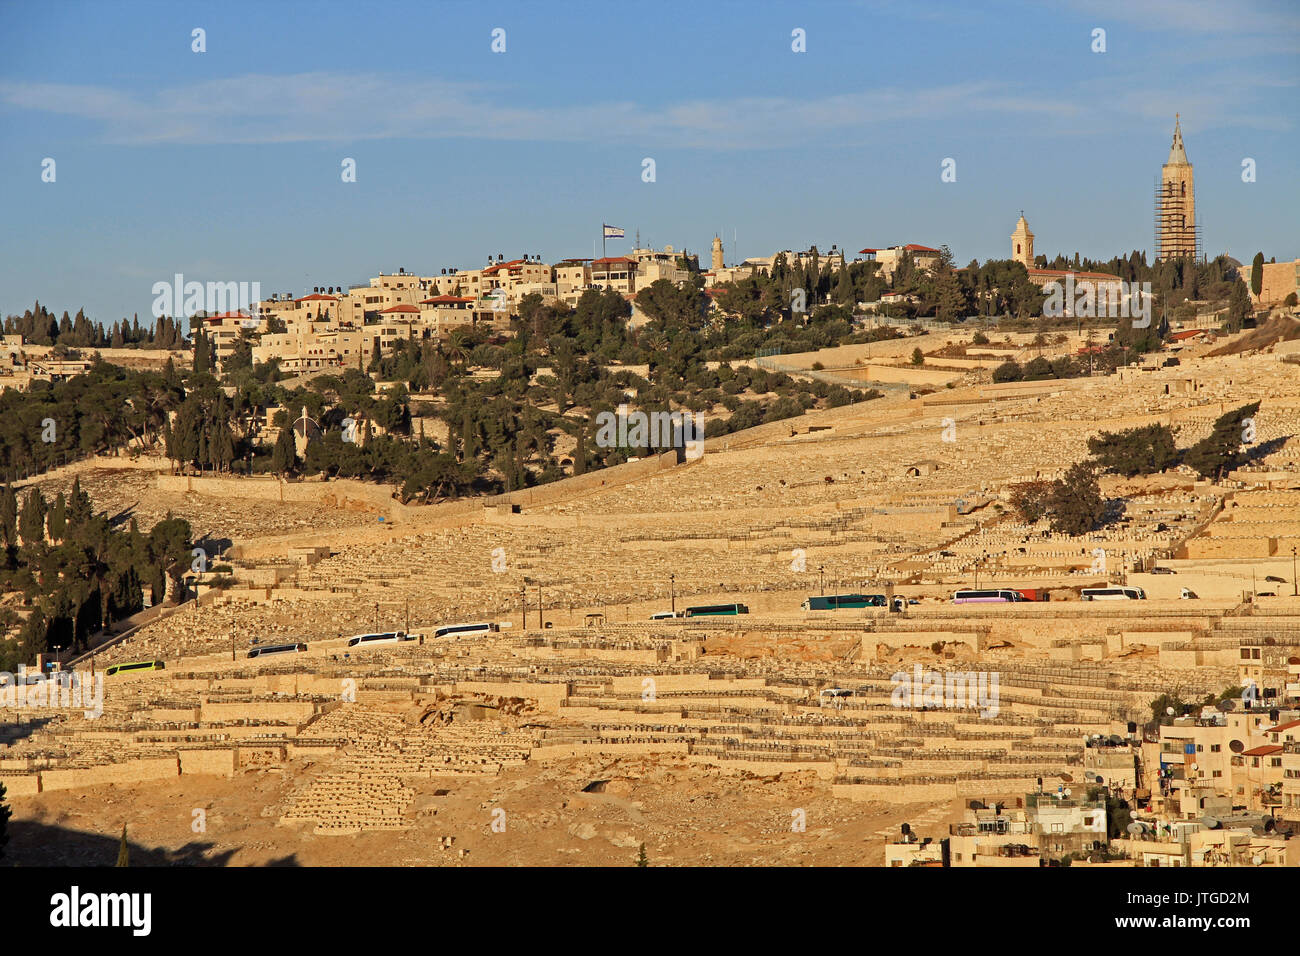 Cimitero e case sul Monte degli Ulivi a Gerusalemme, Israele. Tour bus può essere visto lungo la strada. Foto Stock